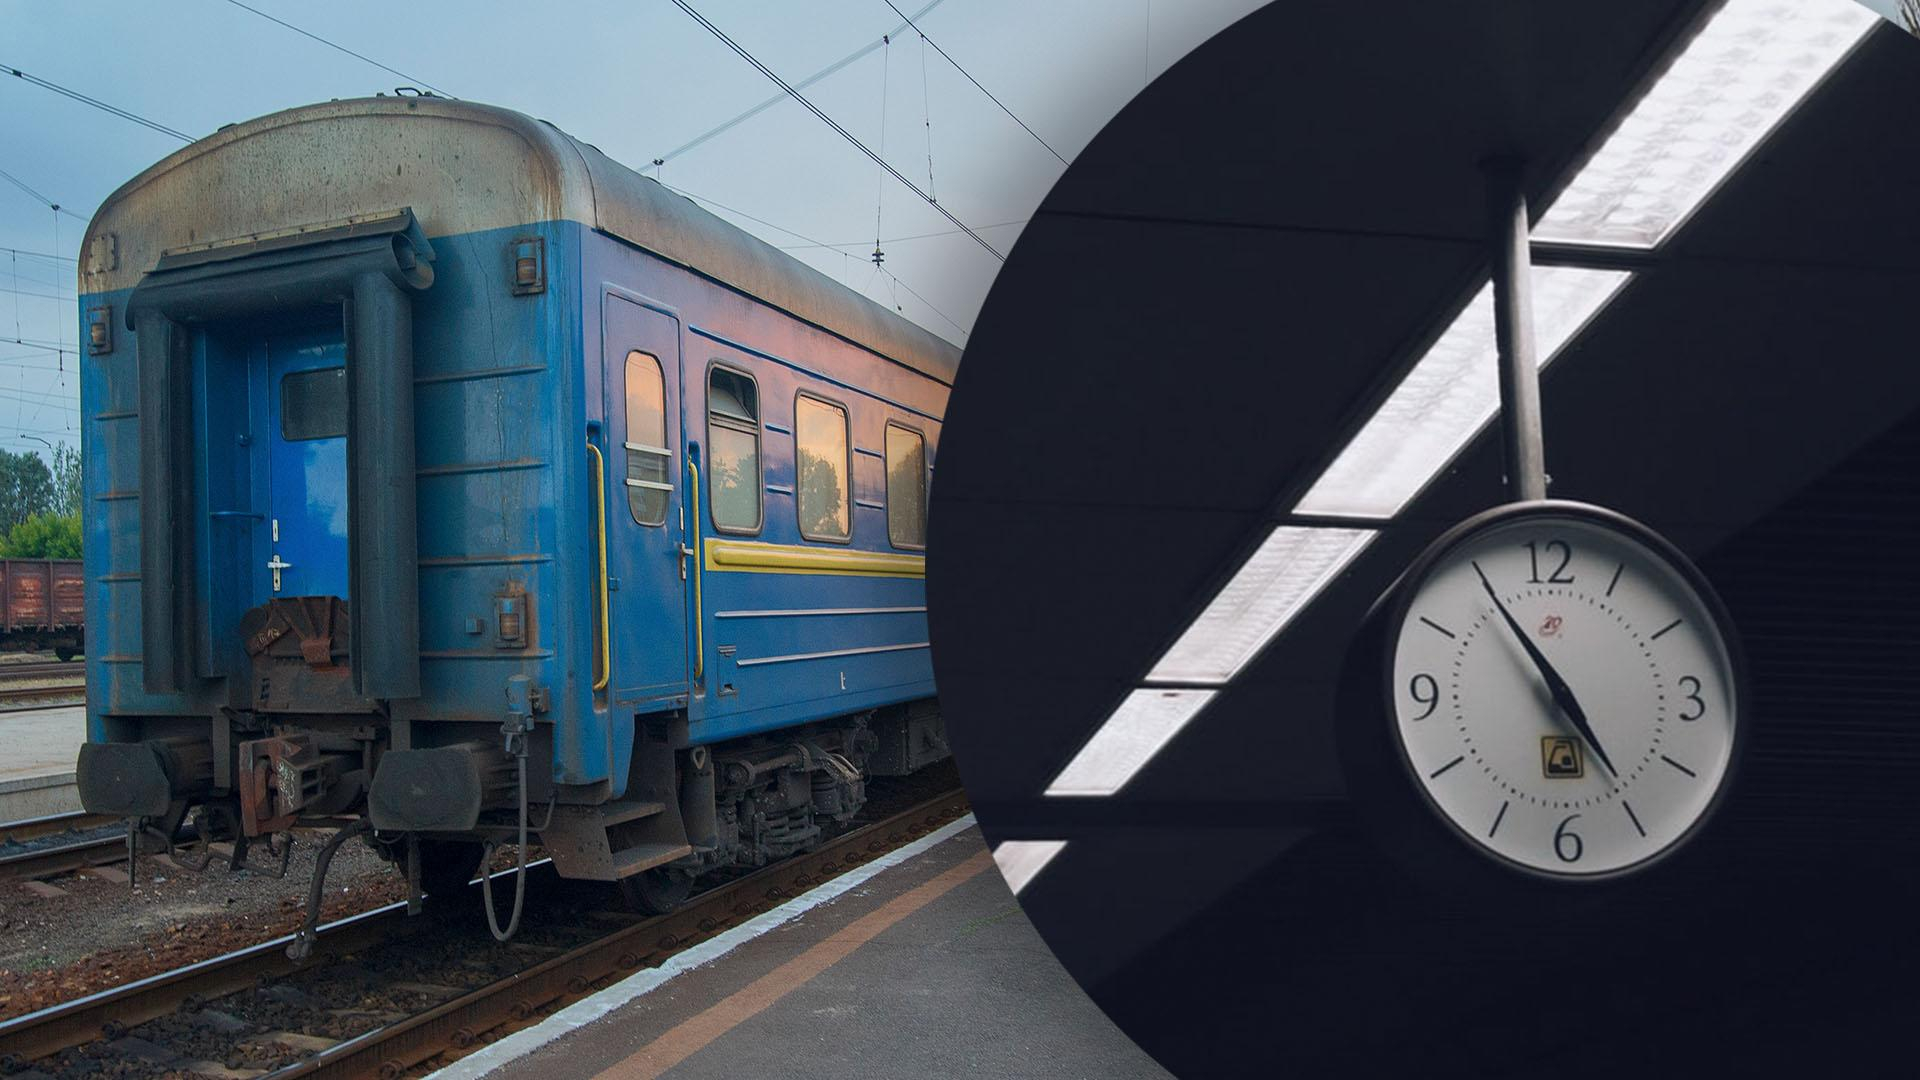 Ремонт на польском участке железной дороги завершили: какие поезда задерживаются